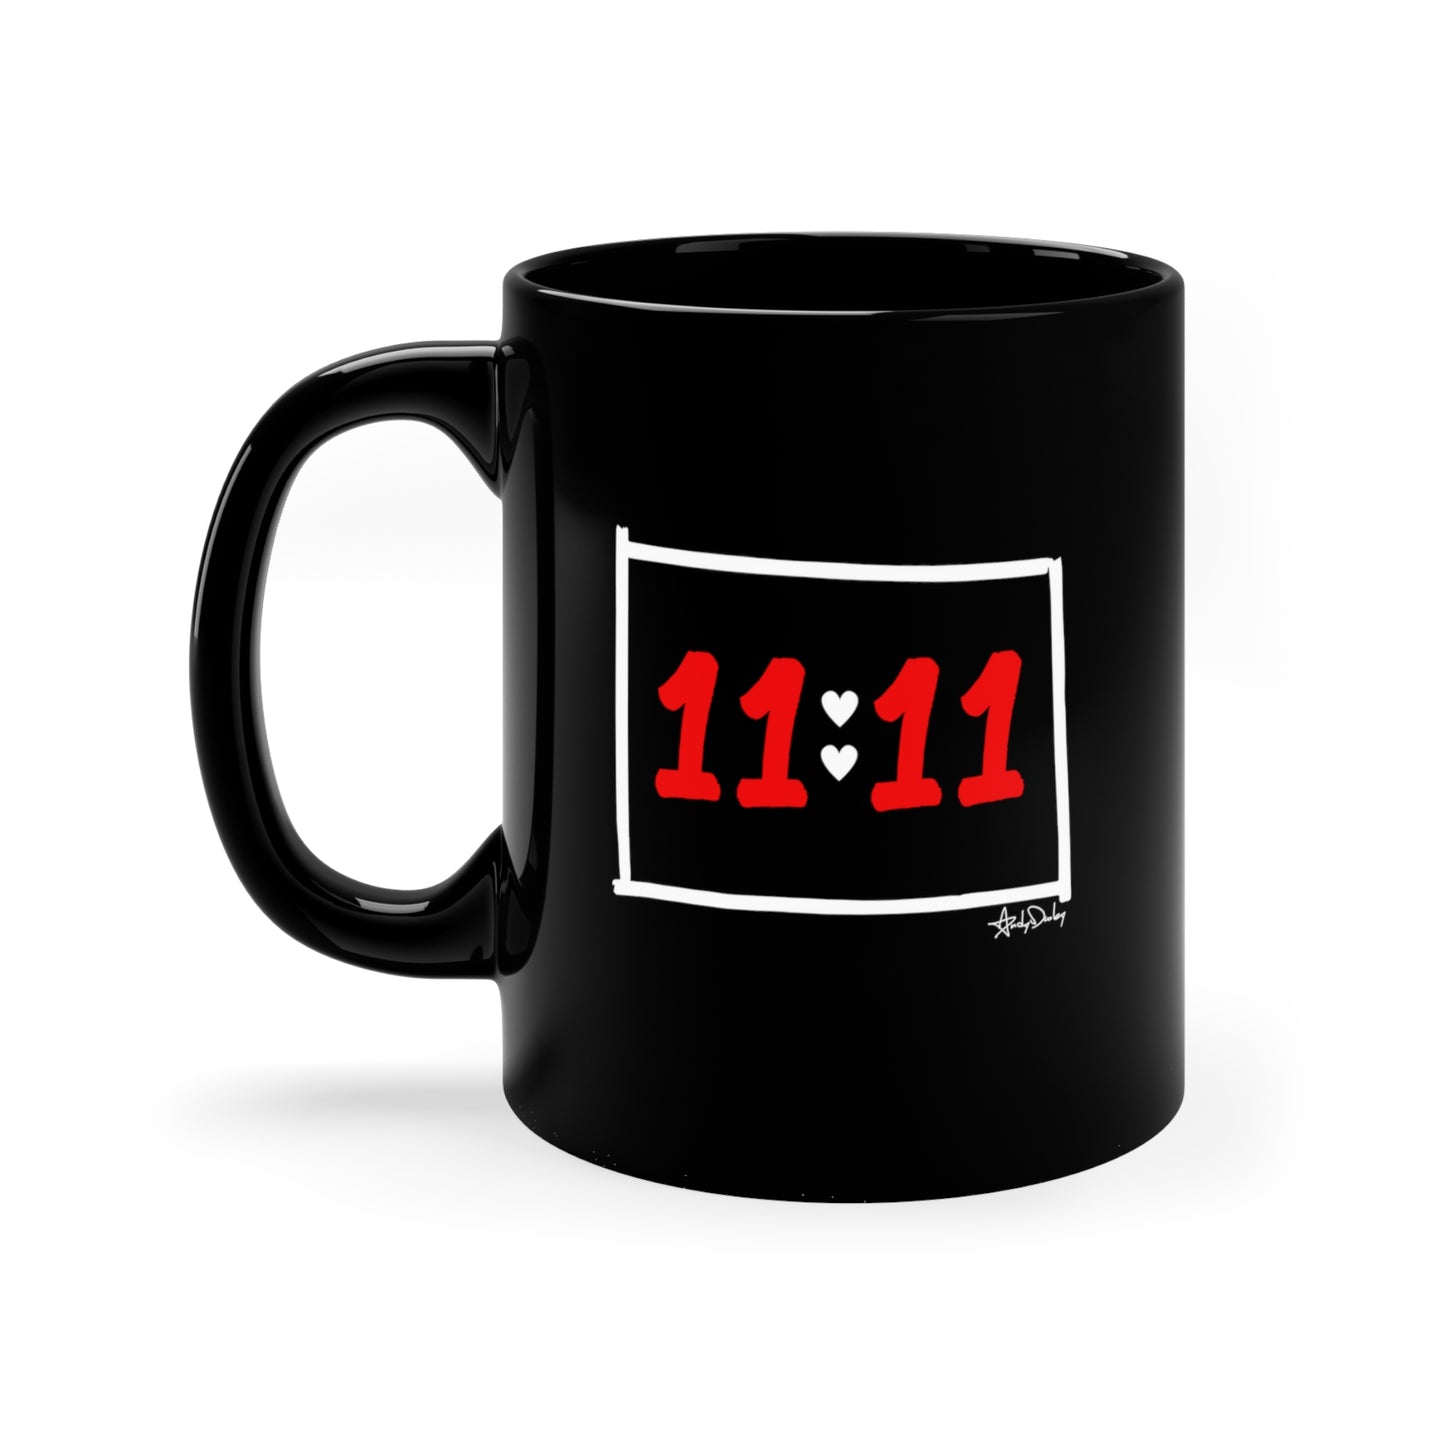 11:11 Alignment Mug 11oz